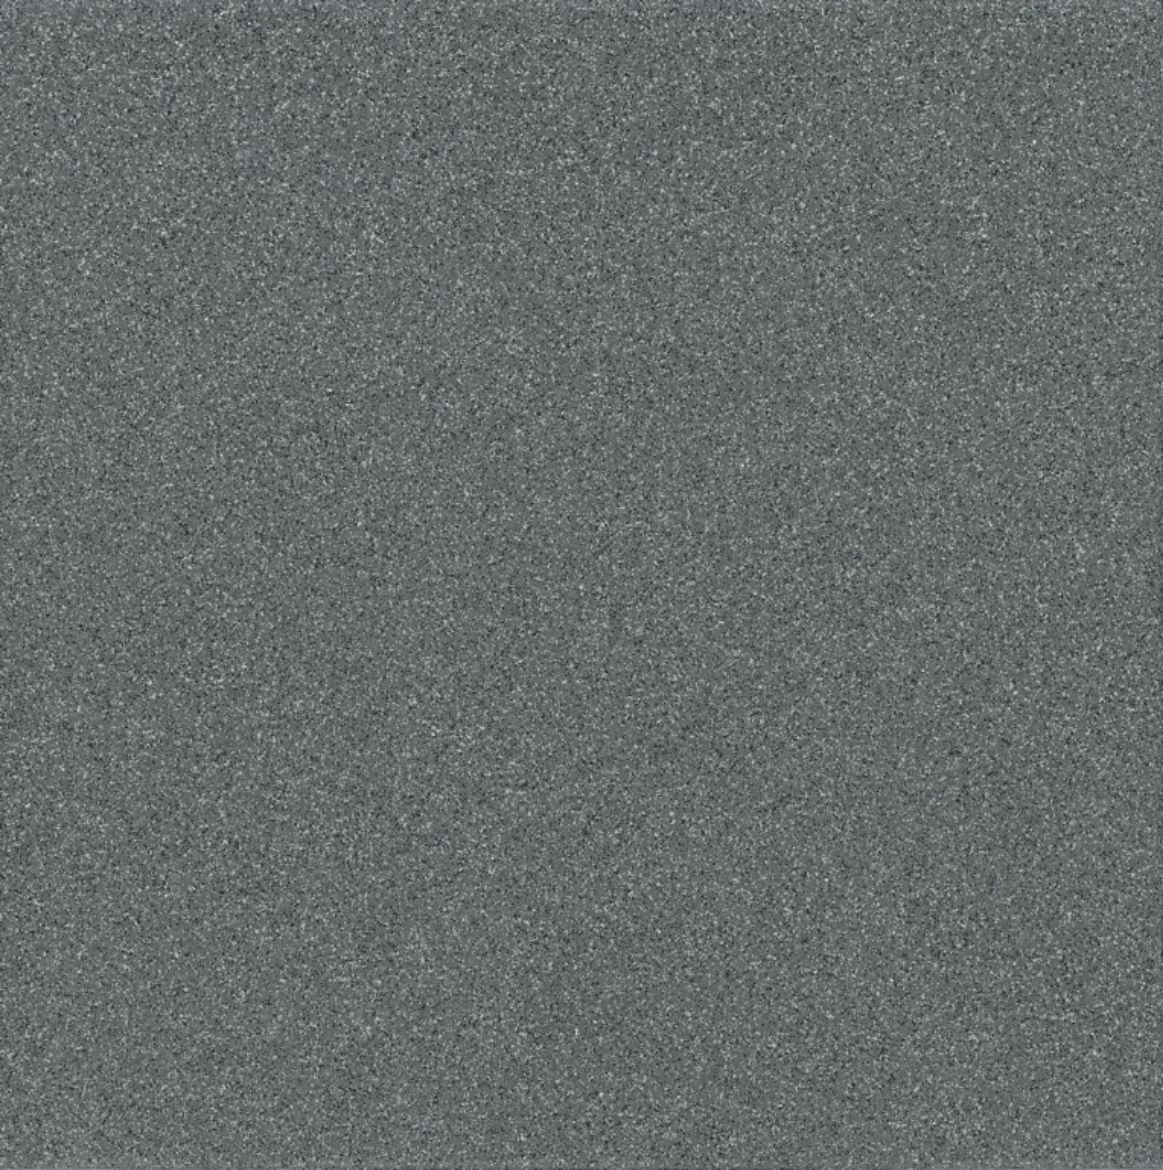 Billede af Taurus Granit Antracit 65 S 198x198 mm